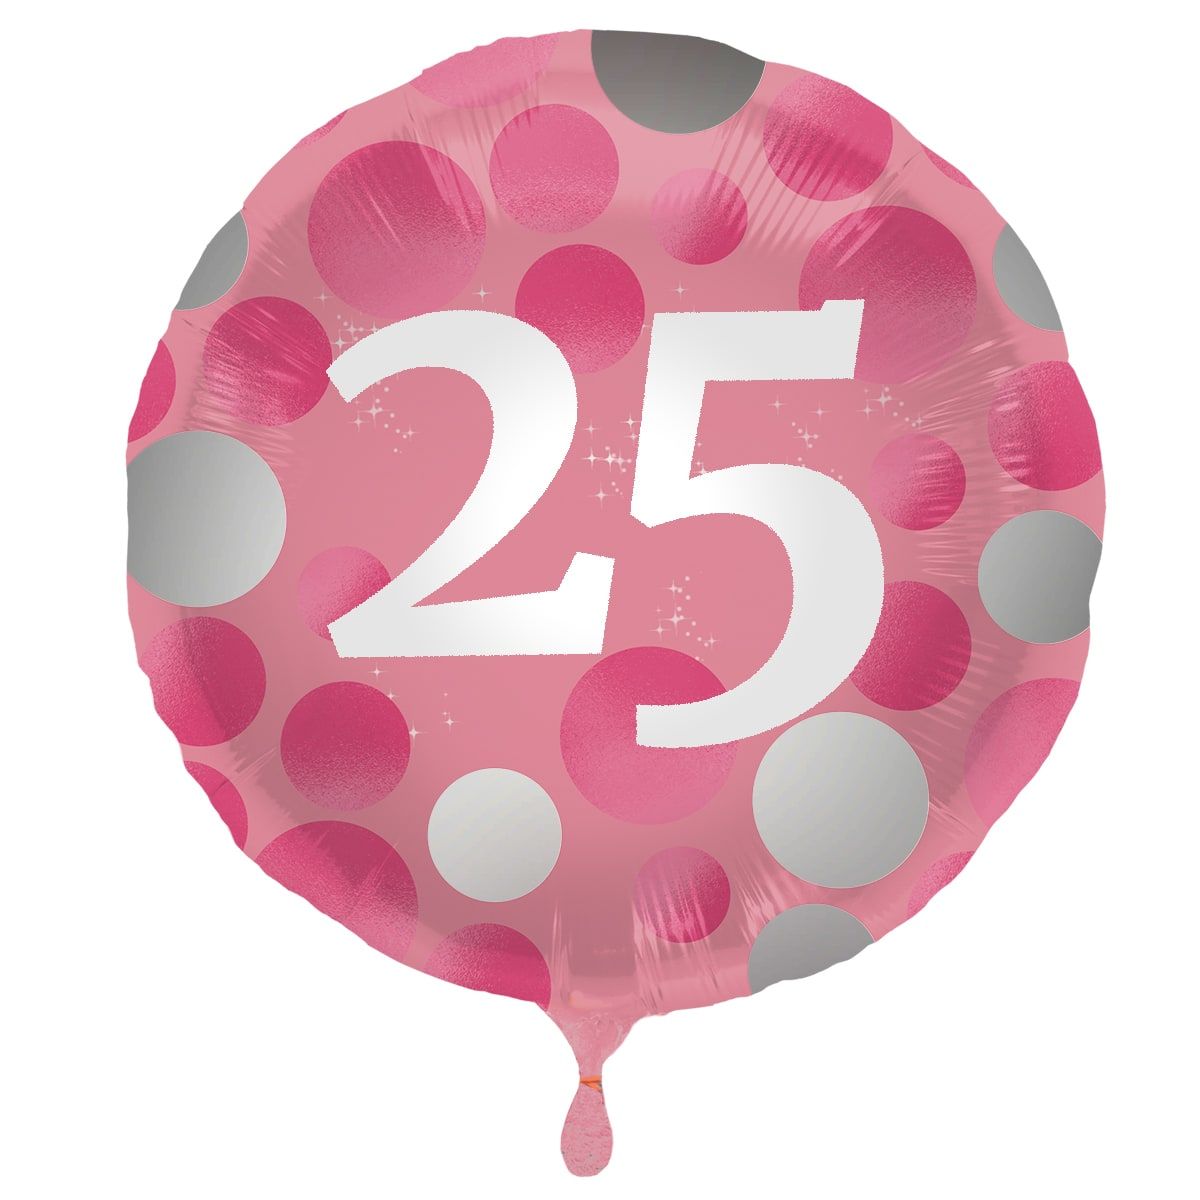 Folieballon glossy 25 happy birthday roze